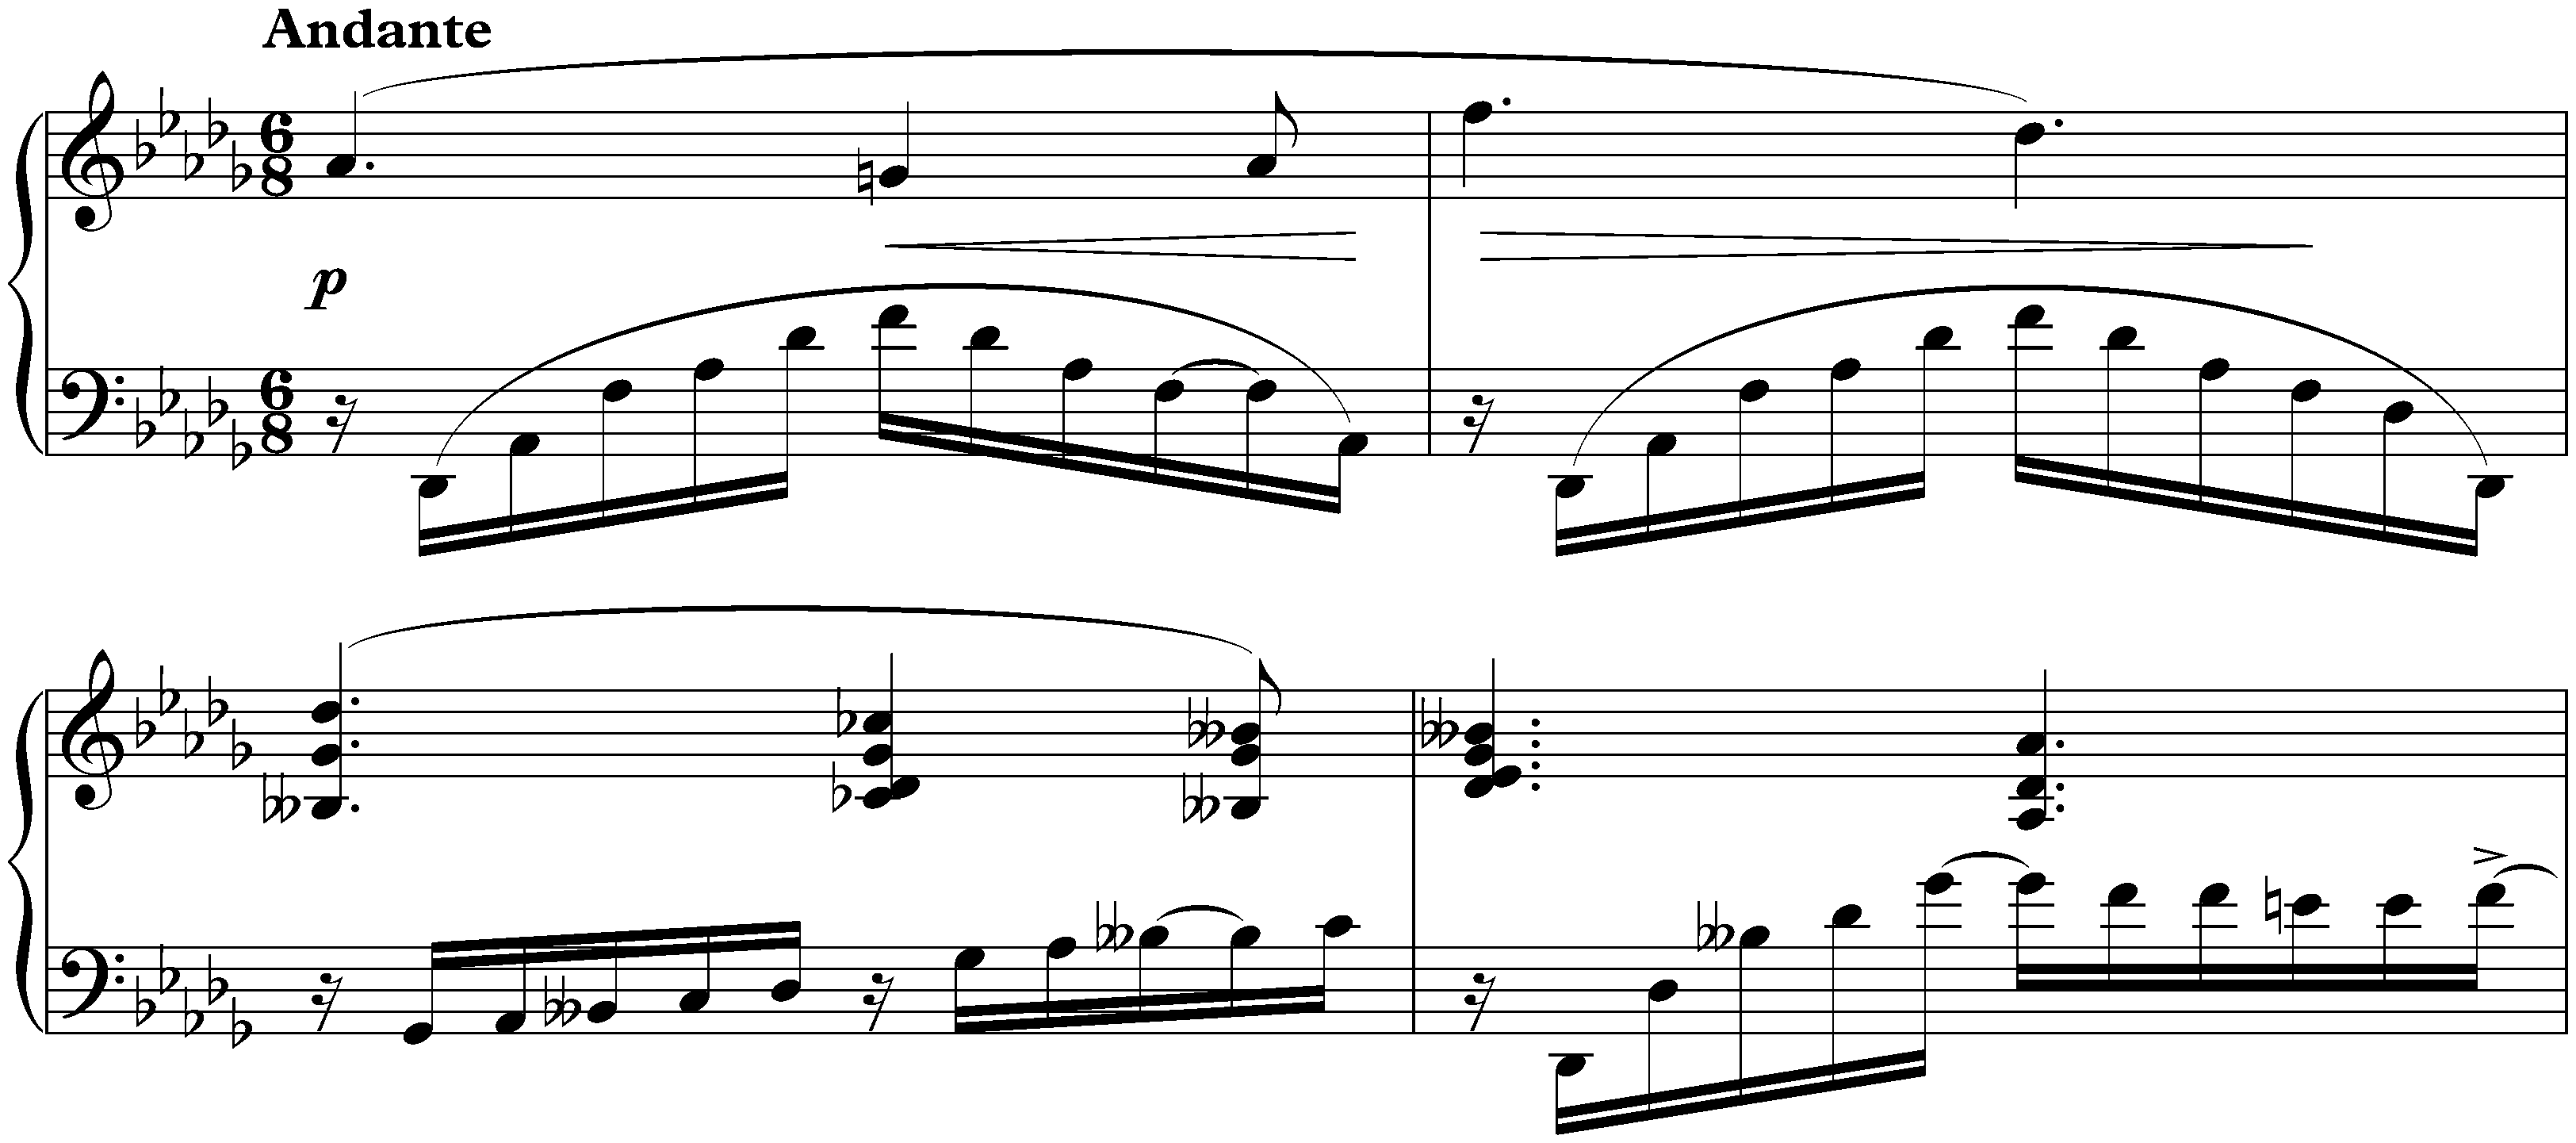 Prélude et nocturne, op. 9; 2. Nocturne in D-flat major